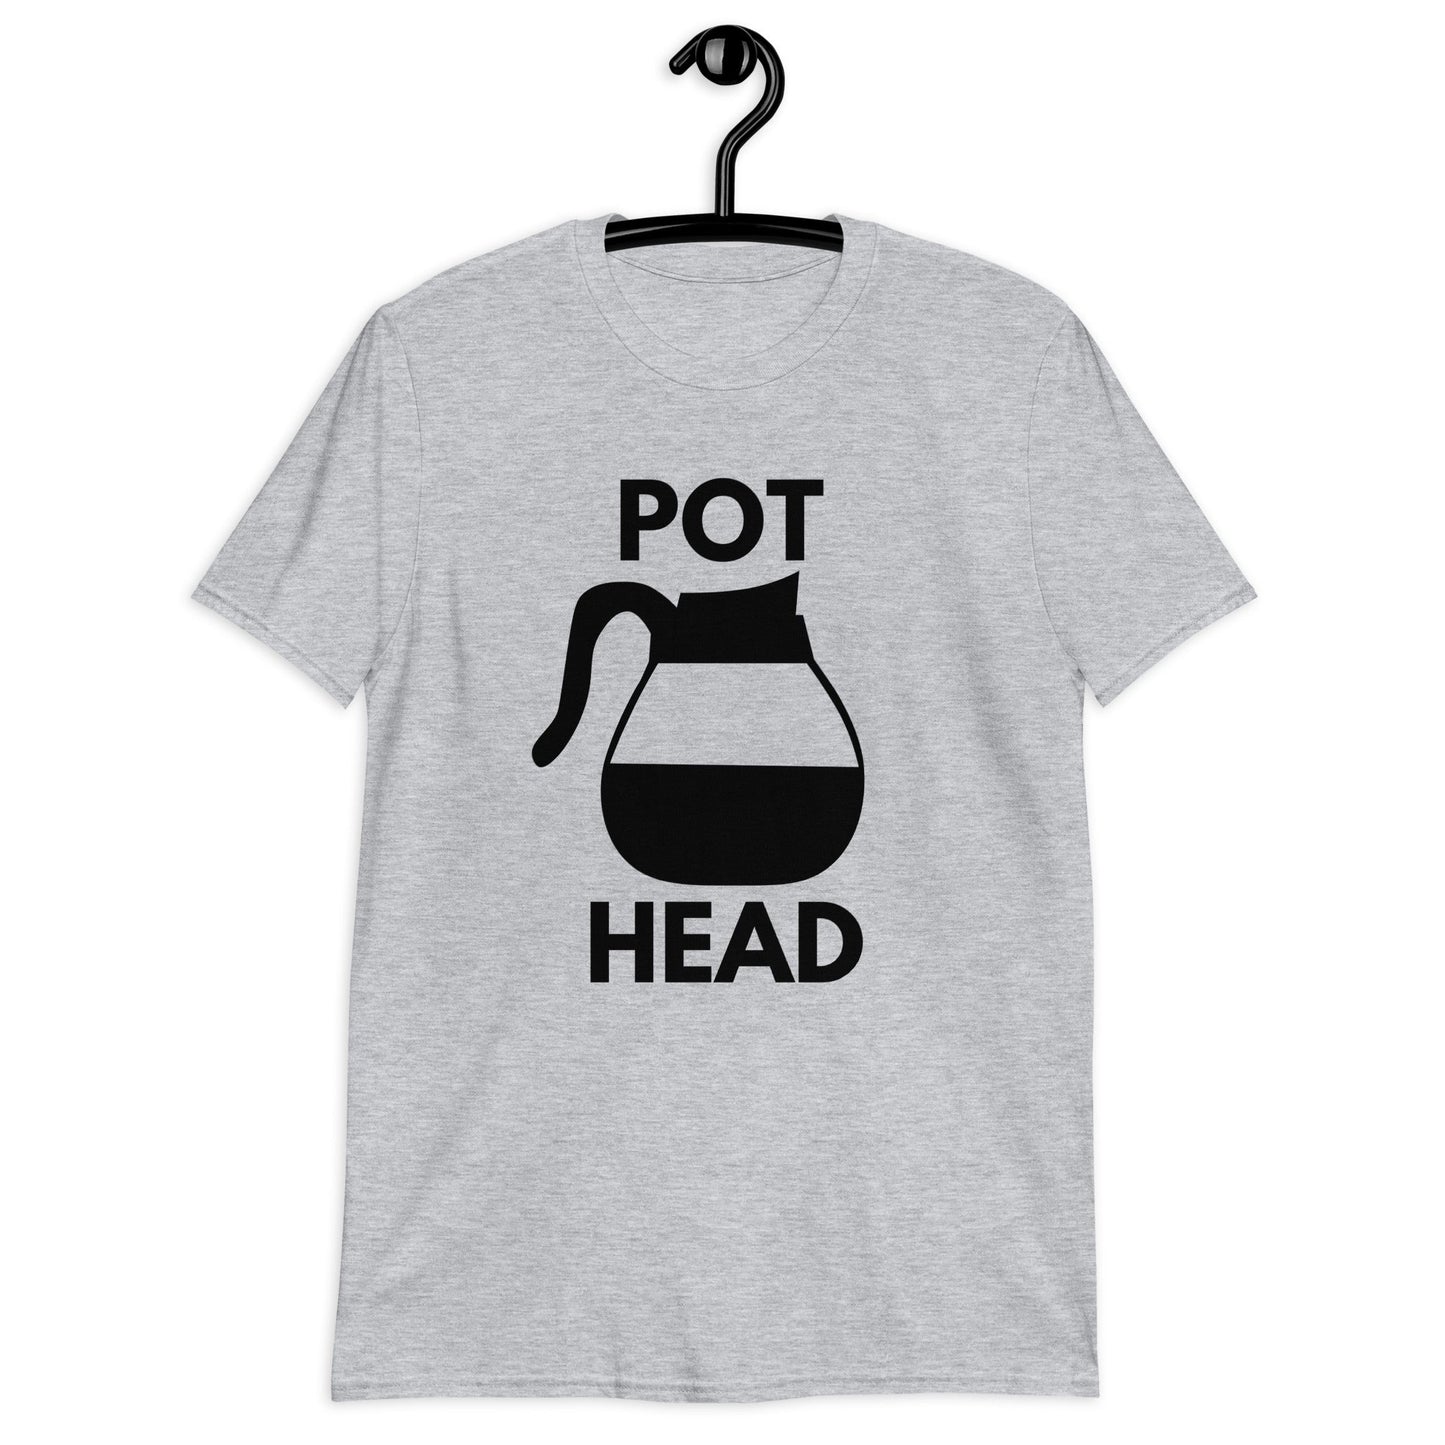 Pot Head T-Shirt - Kindle Crack